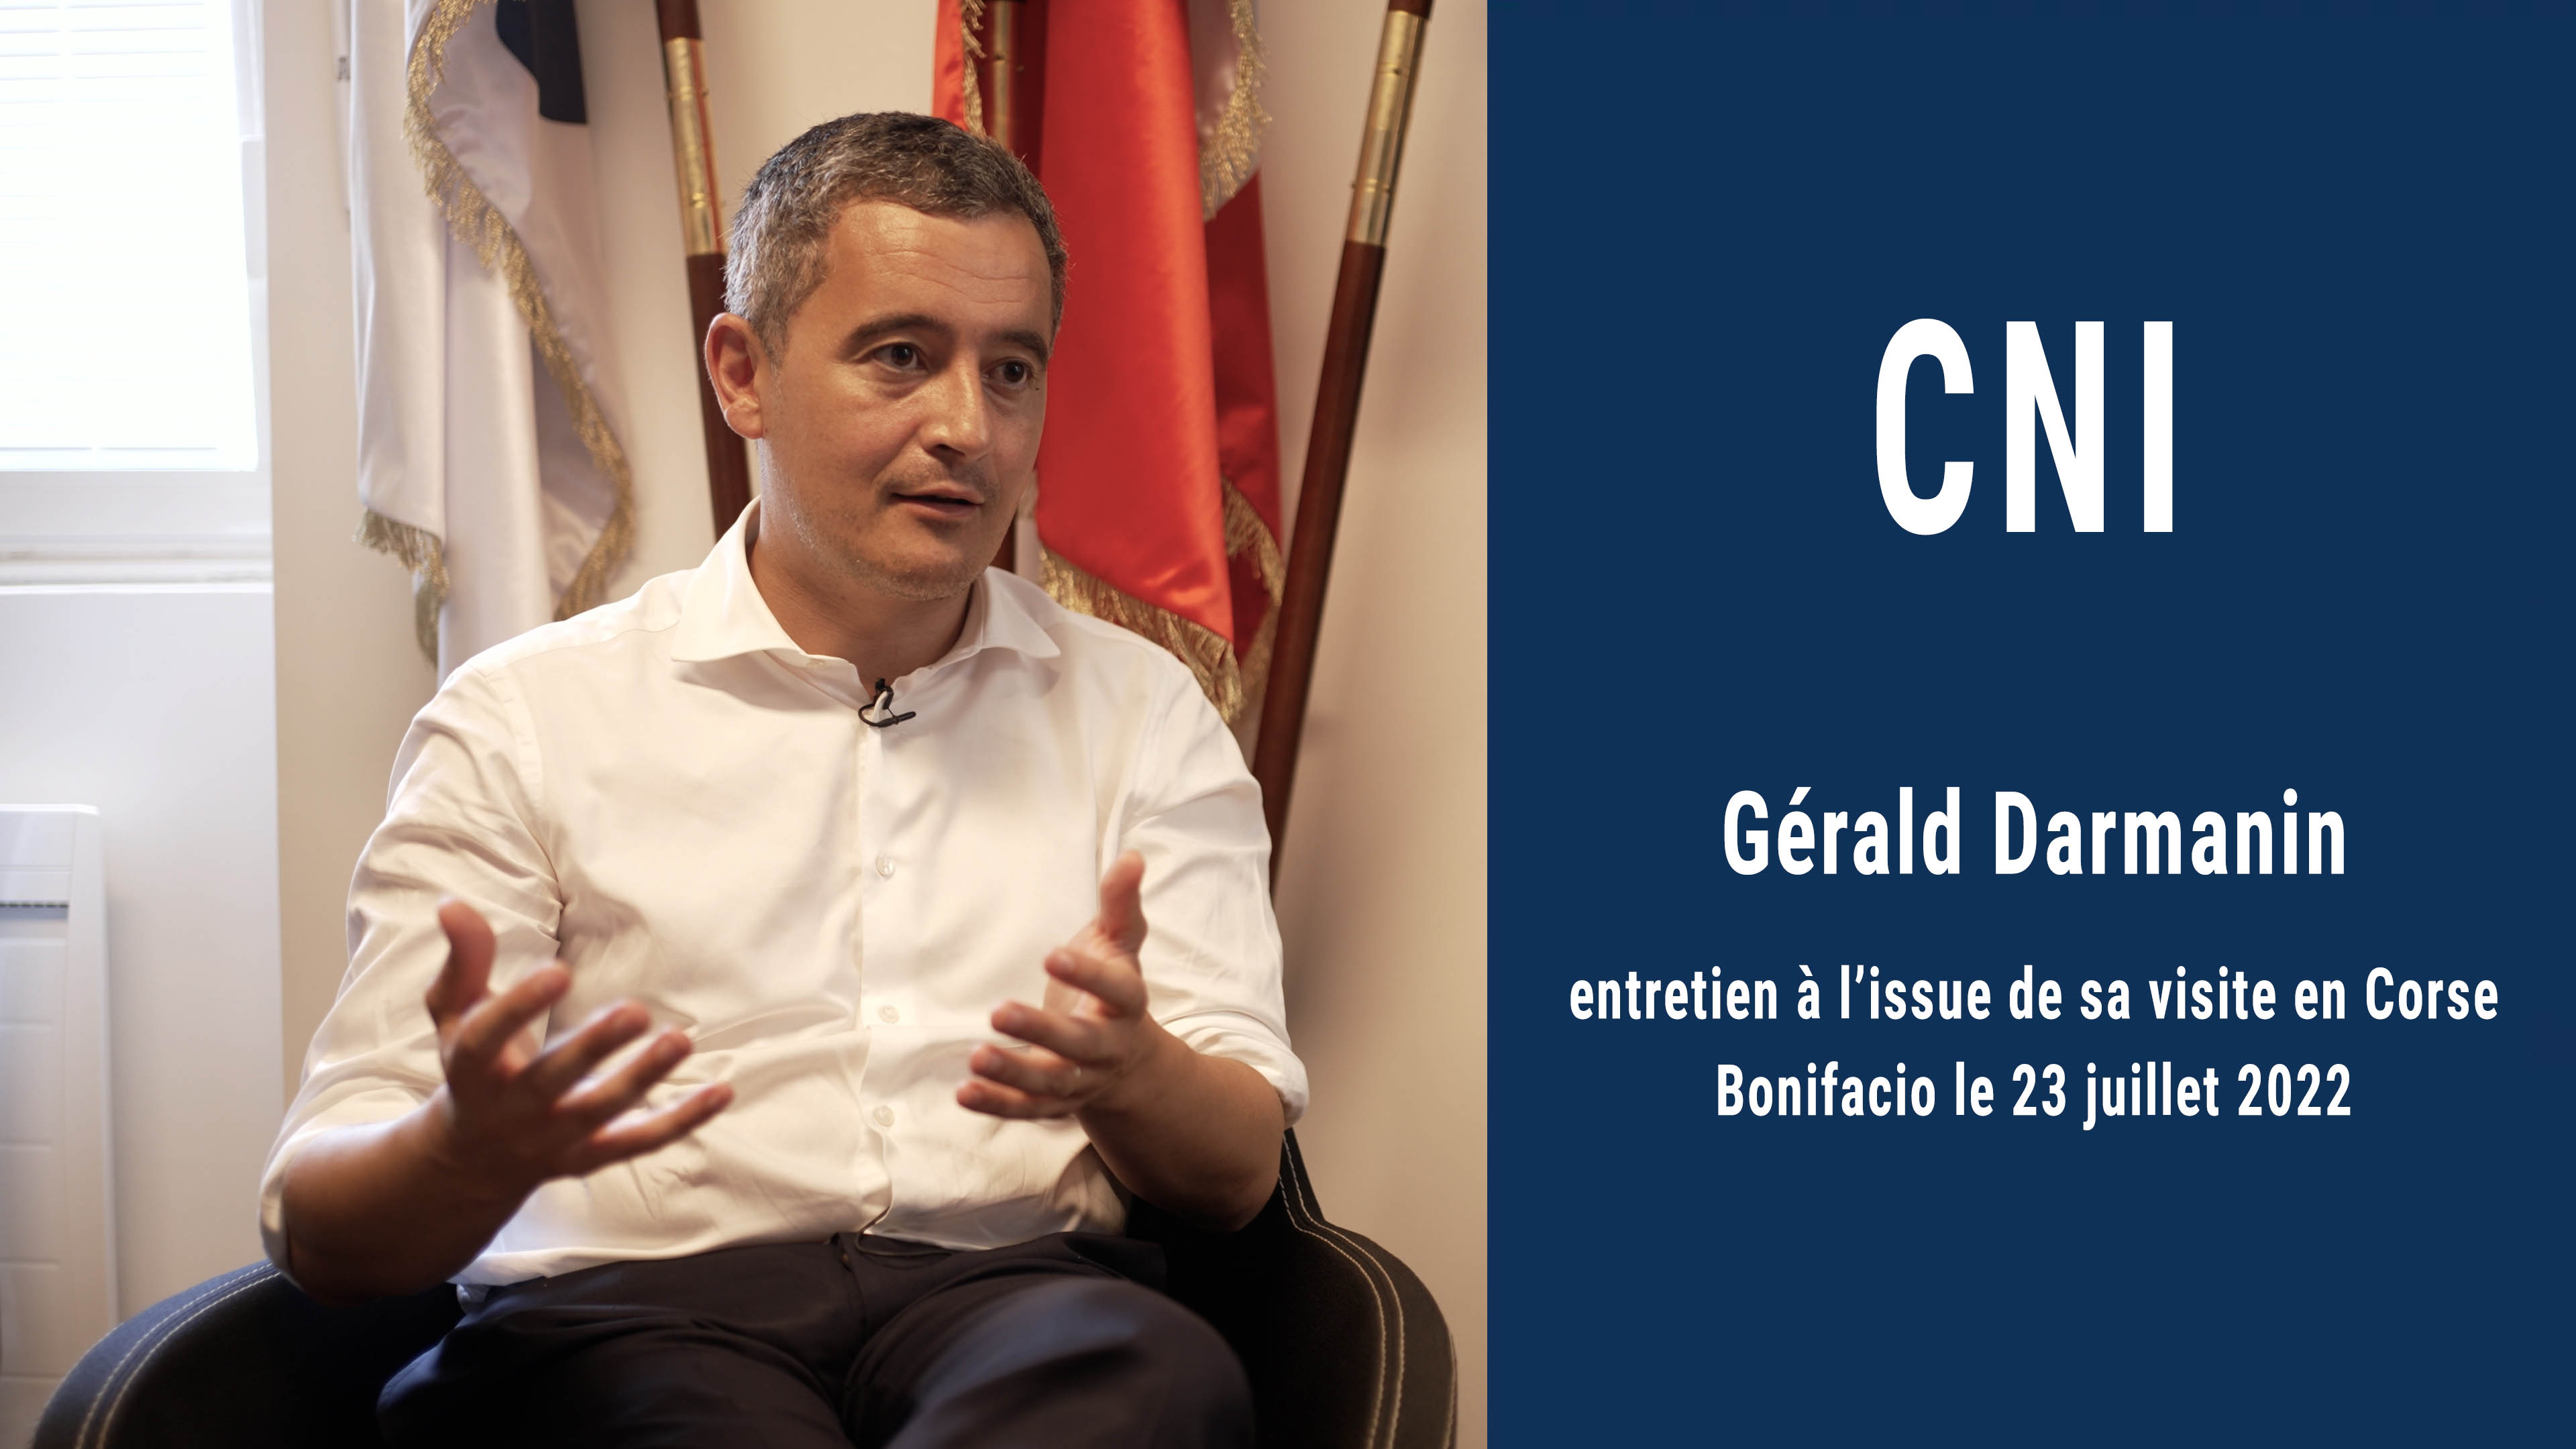 Gérald Darmanin à CNI : "Je suis prêt à discuter de ce que veulent les Corses avec beaucoup d’écoute, mais ferme sur les principes"